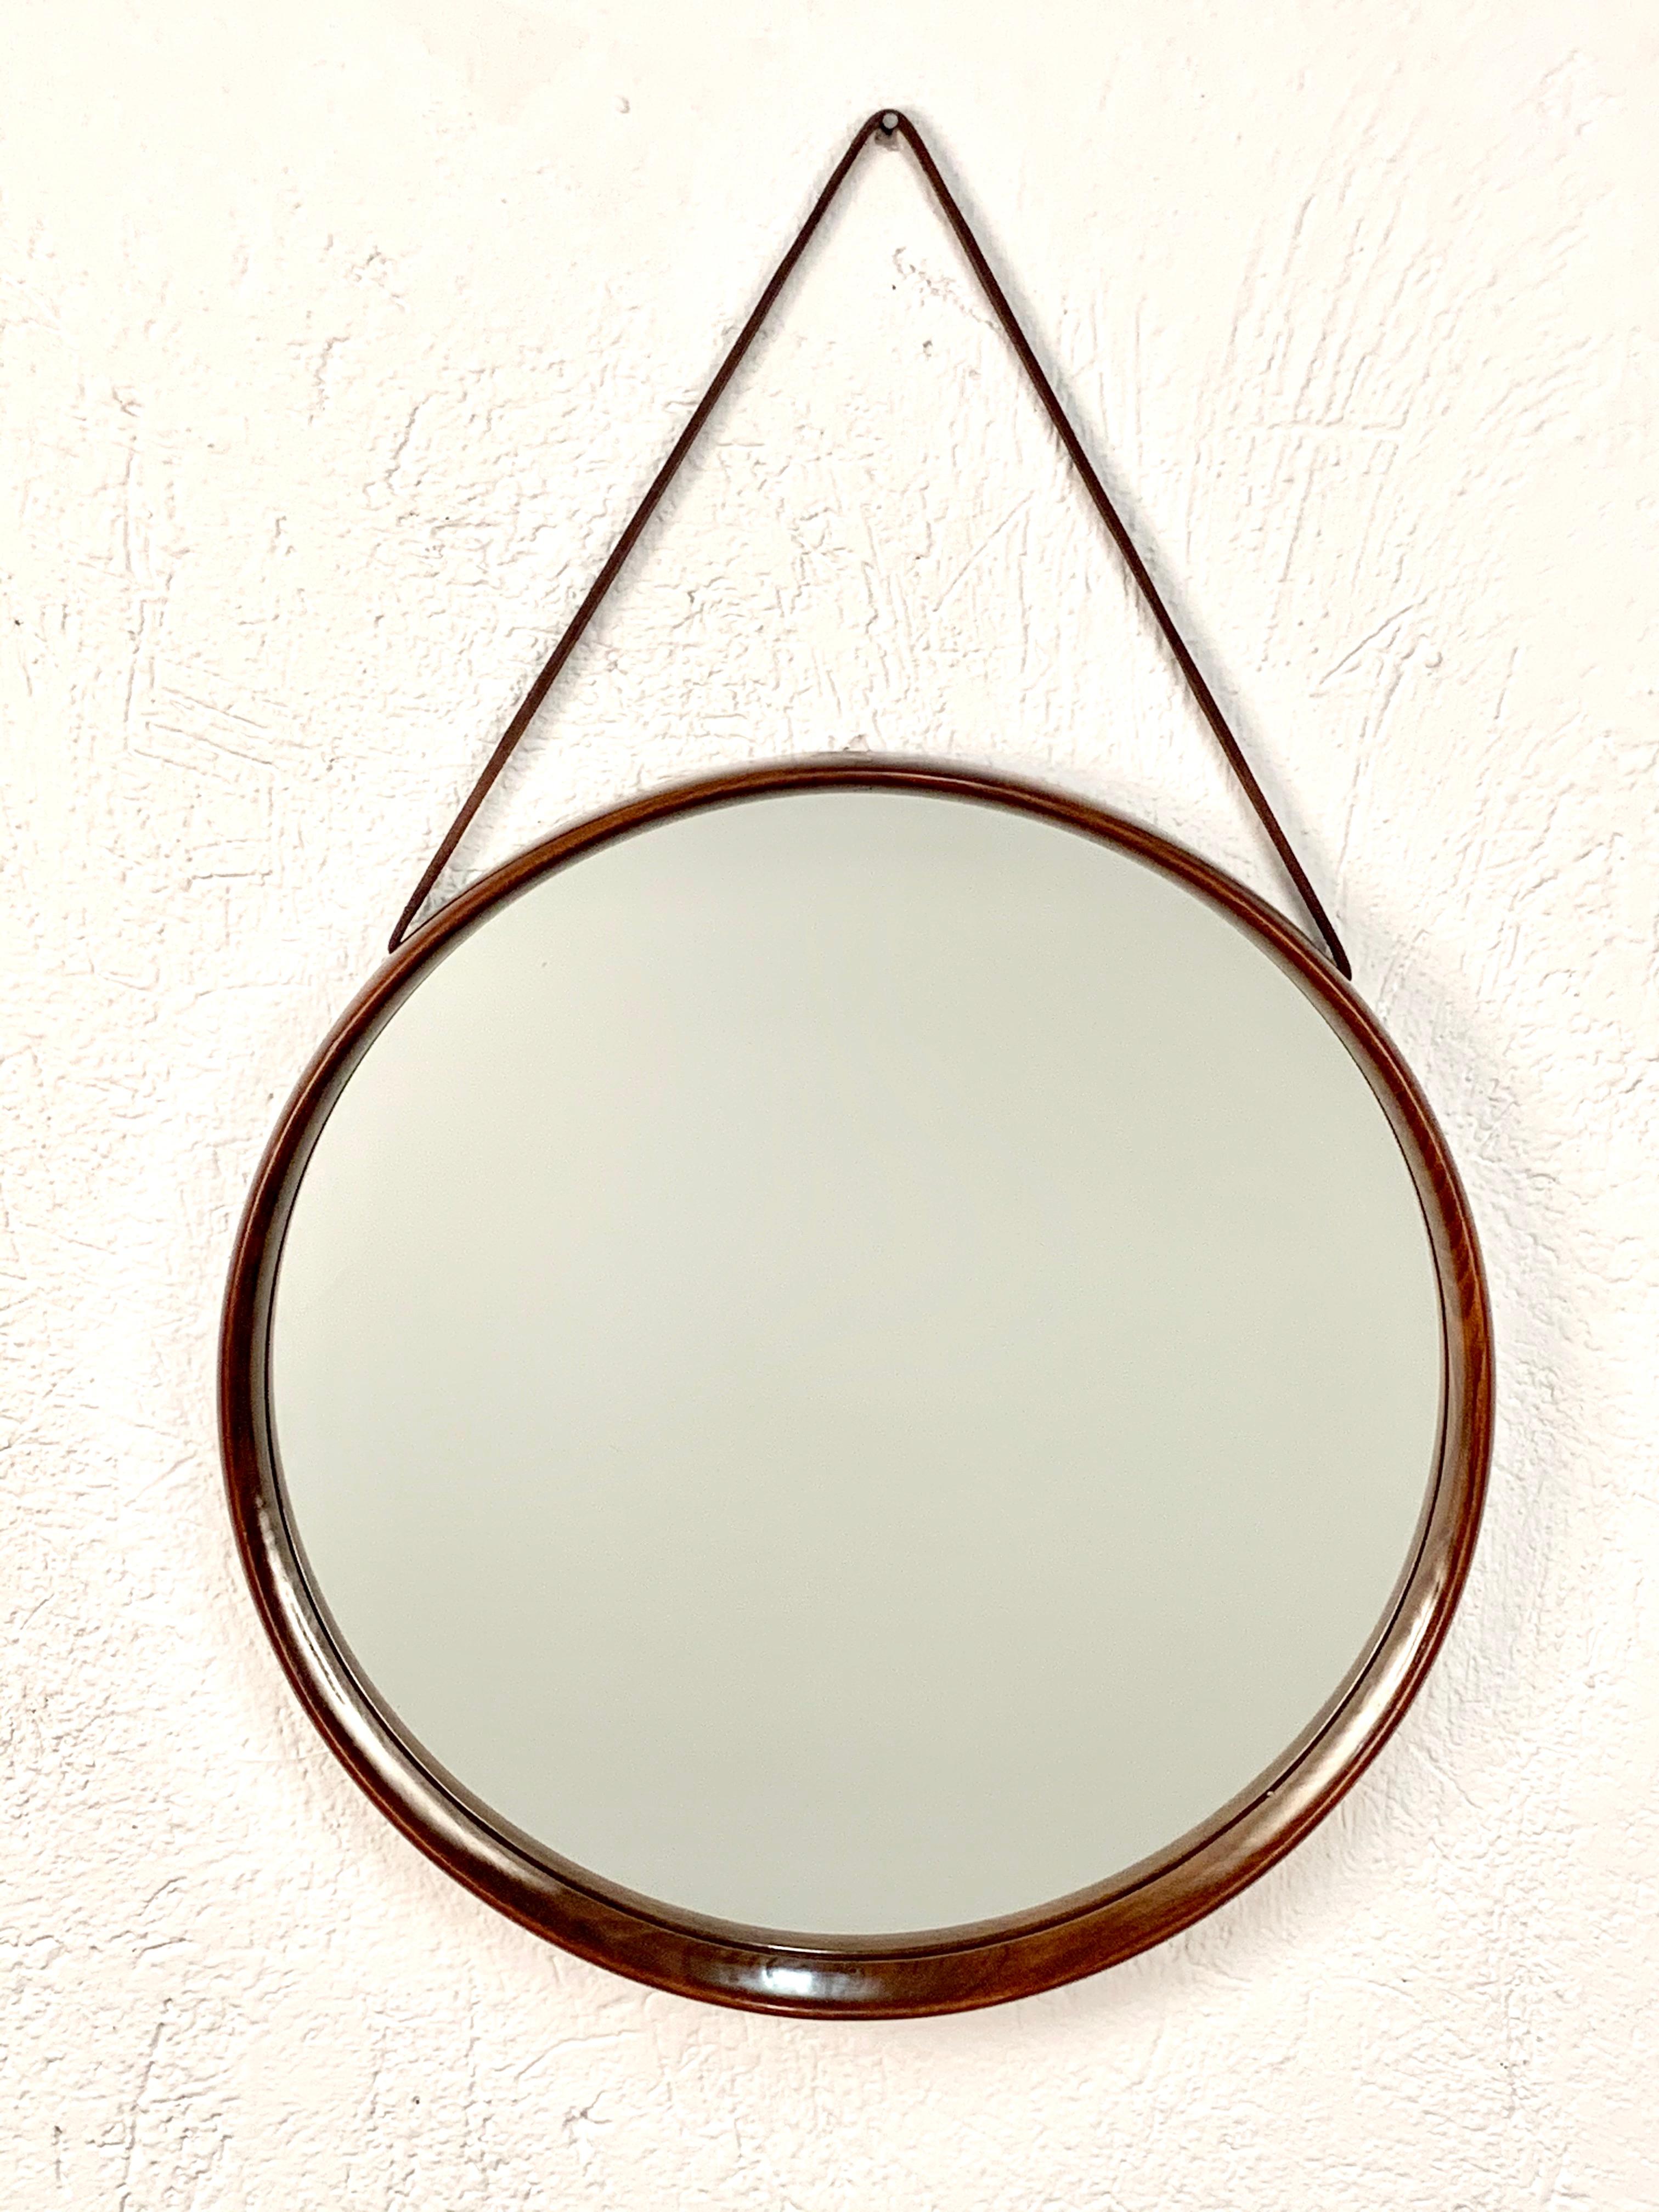 Espejo sueco de Uno & Östen Kristiansson para Luxus en madera de teca con correa de piel para colgar. 

El marco hace circular el cristal y está hecho de distintas piezas de madera entrelazadas entre sí, creando una hermosa variedad de colores y